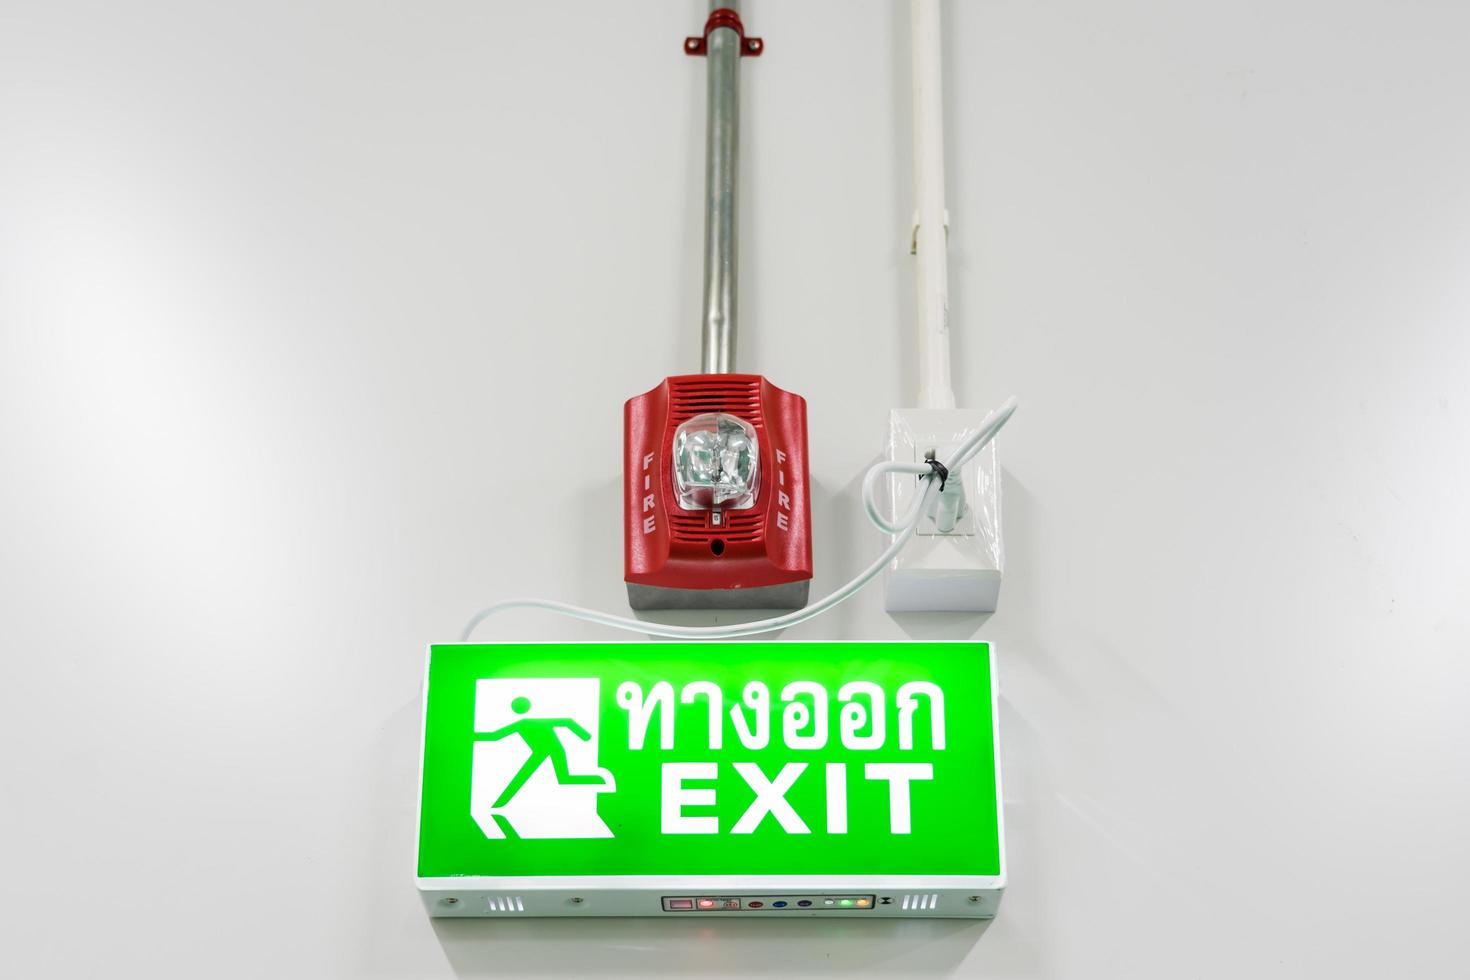 alarme de proteção contra incêndio e sinal de saída de emergência foto